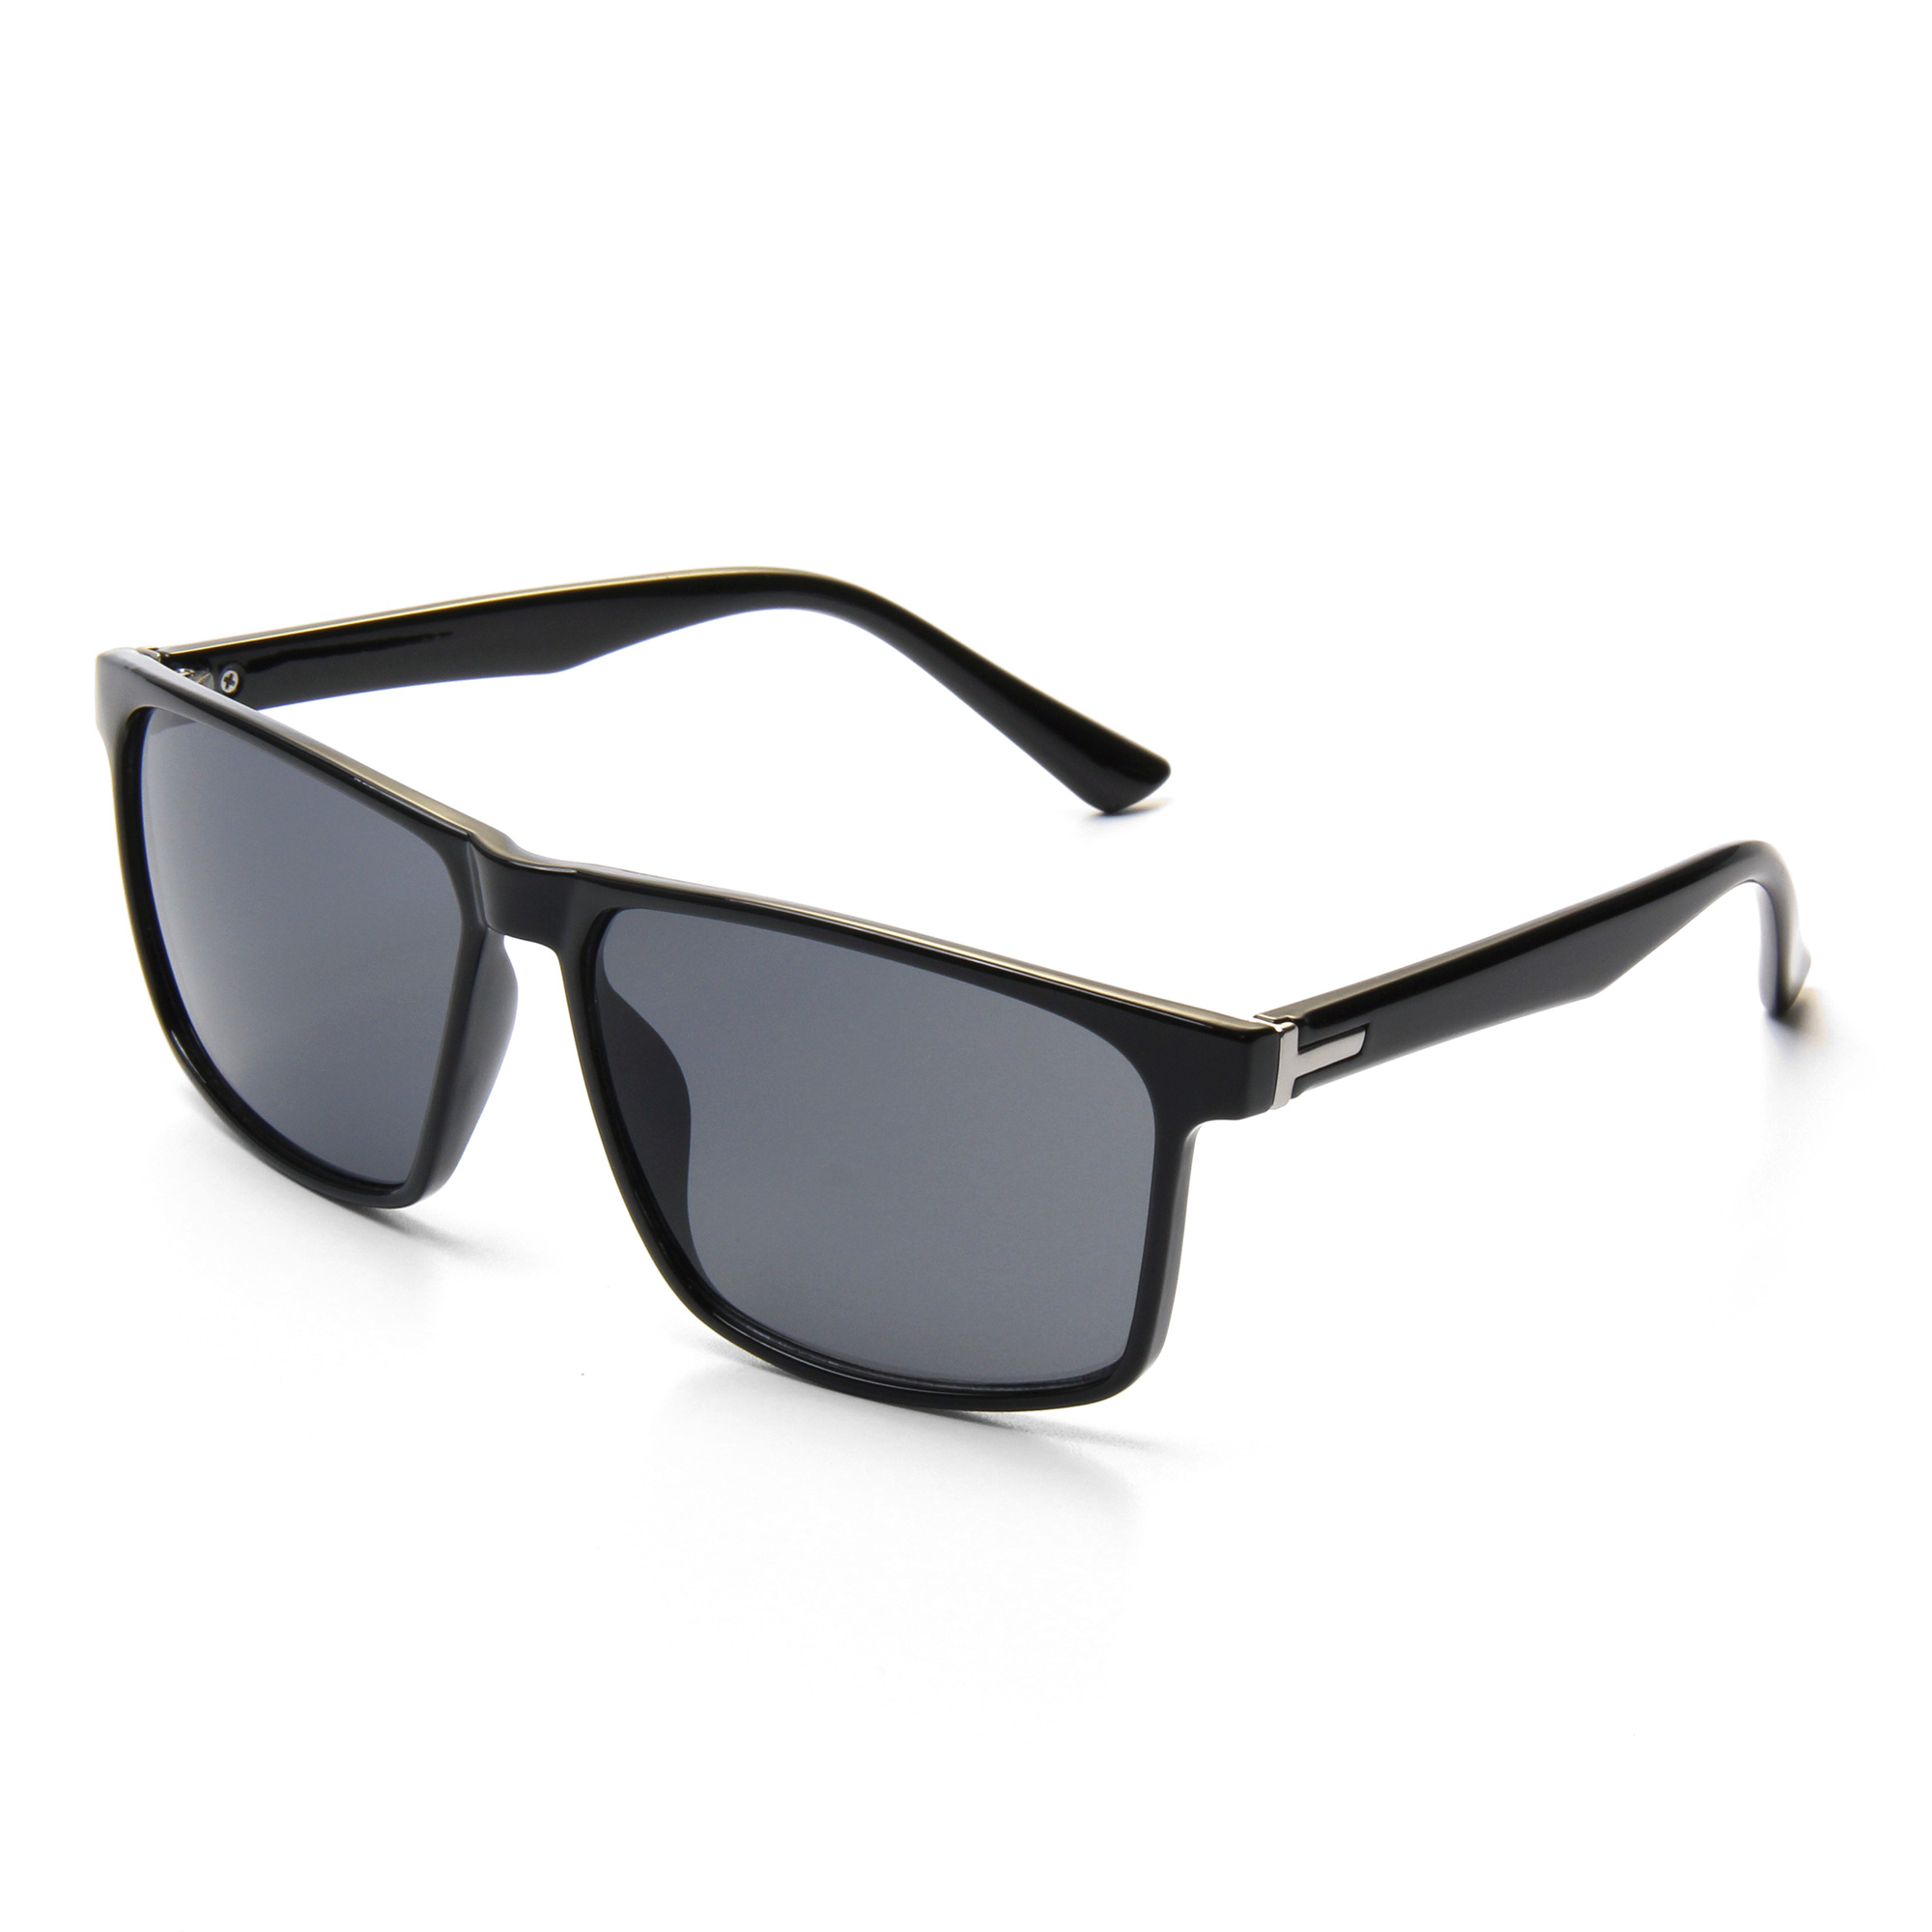 Eugenia men sunglasses luxury for outdoor-2